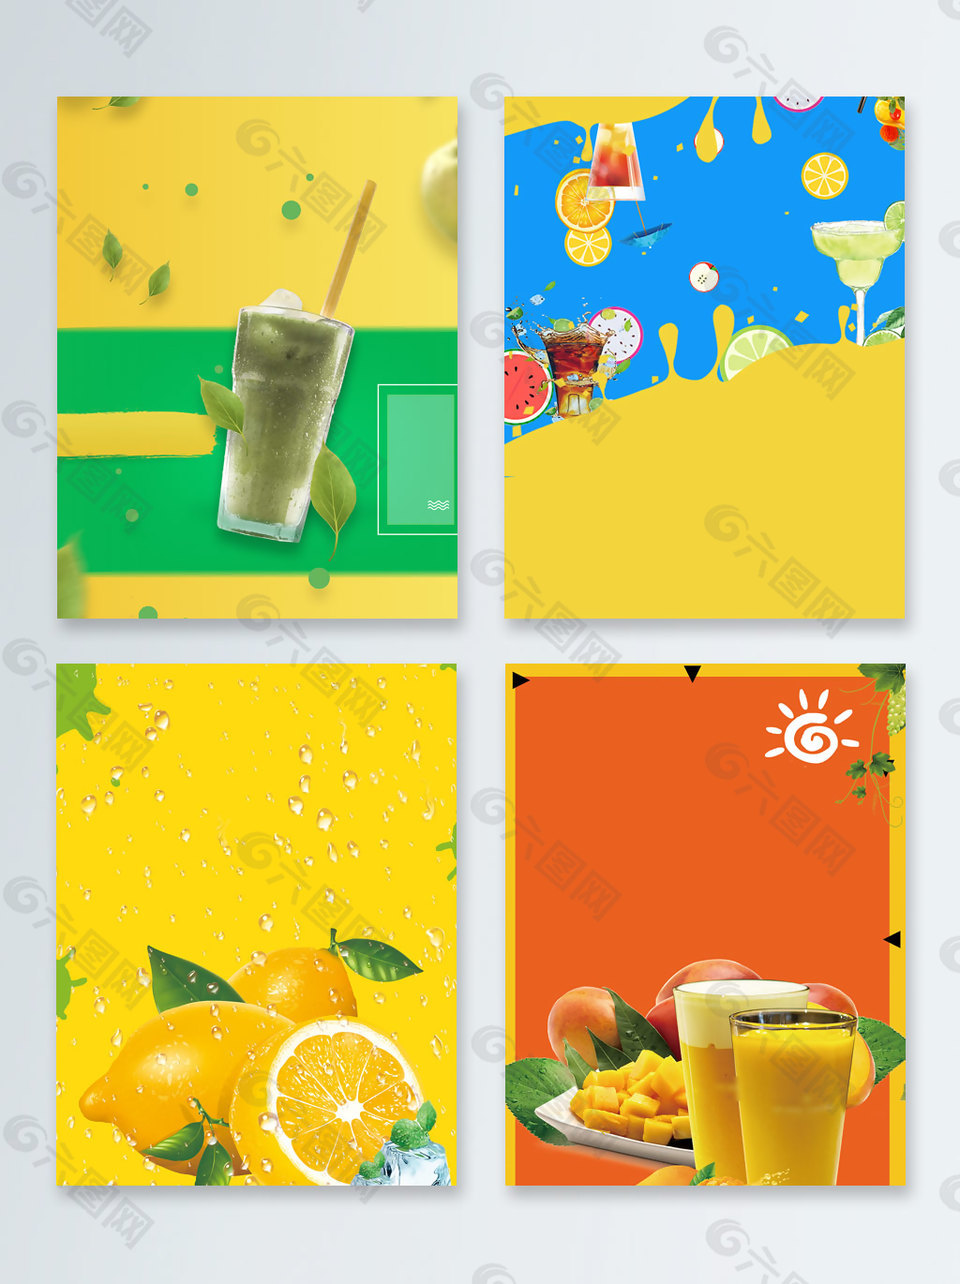 橙汁夏季促销广告背景